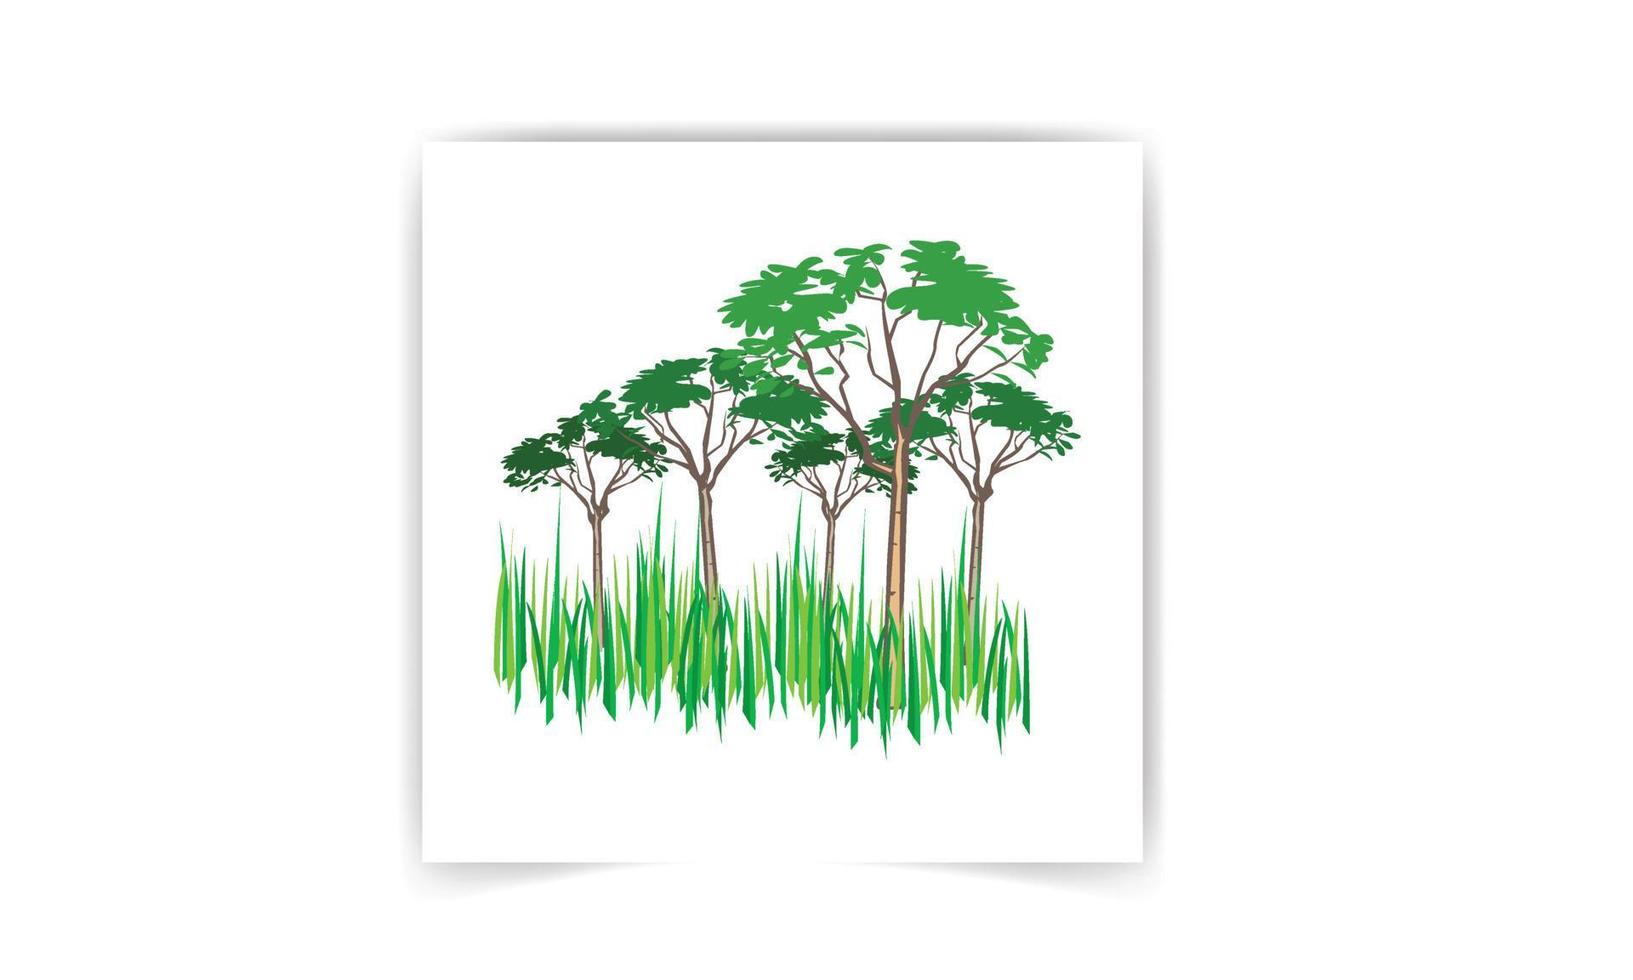 raccolta di illustrazioni di alberi. può essere utilizzato per illustrare qualsiasi tema di natura o stile di vita sano vettore